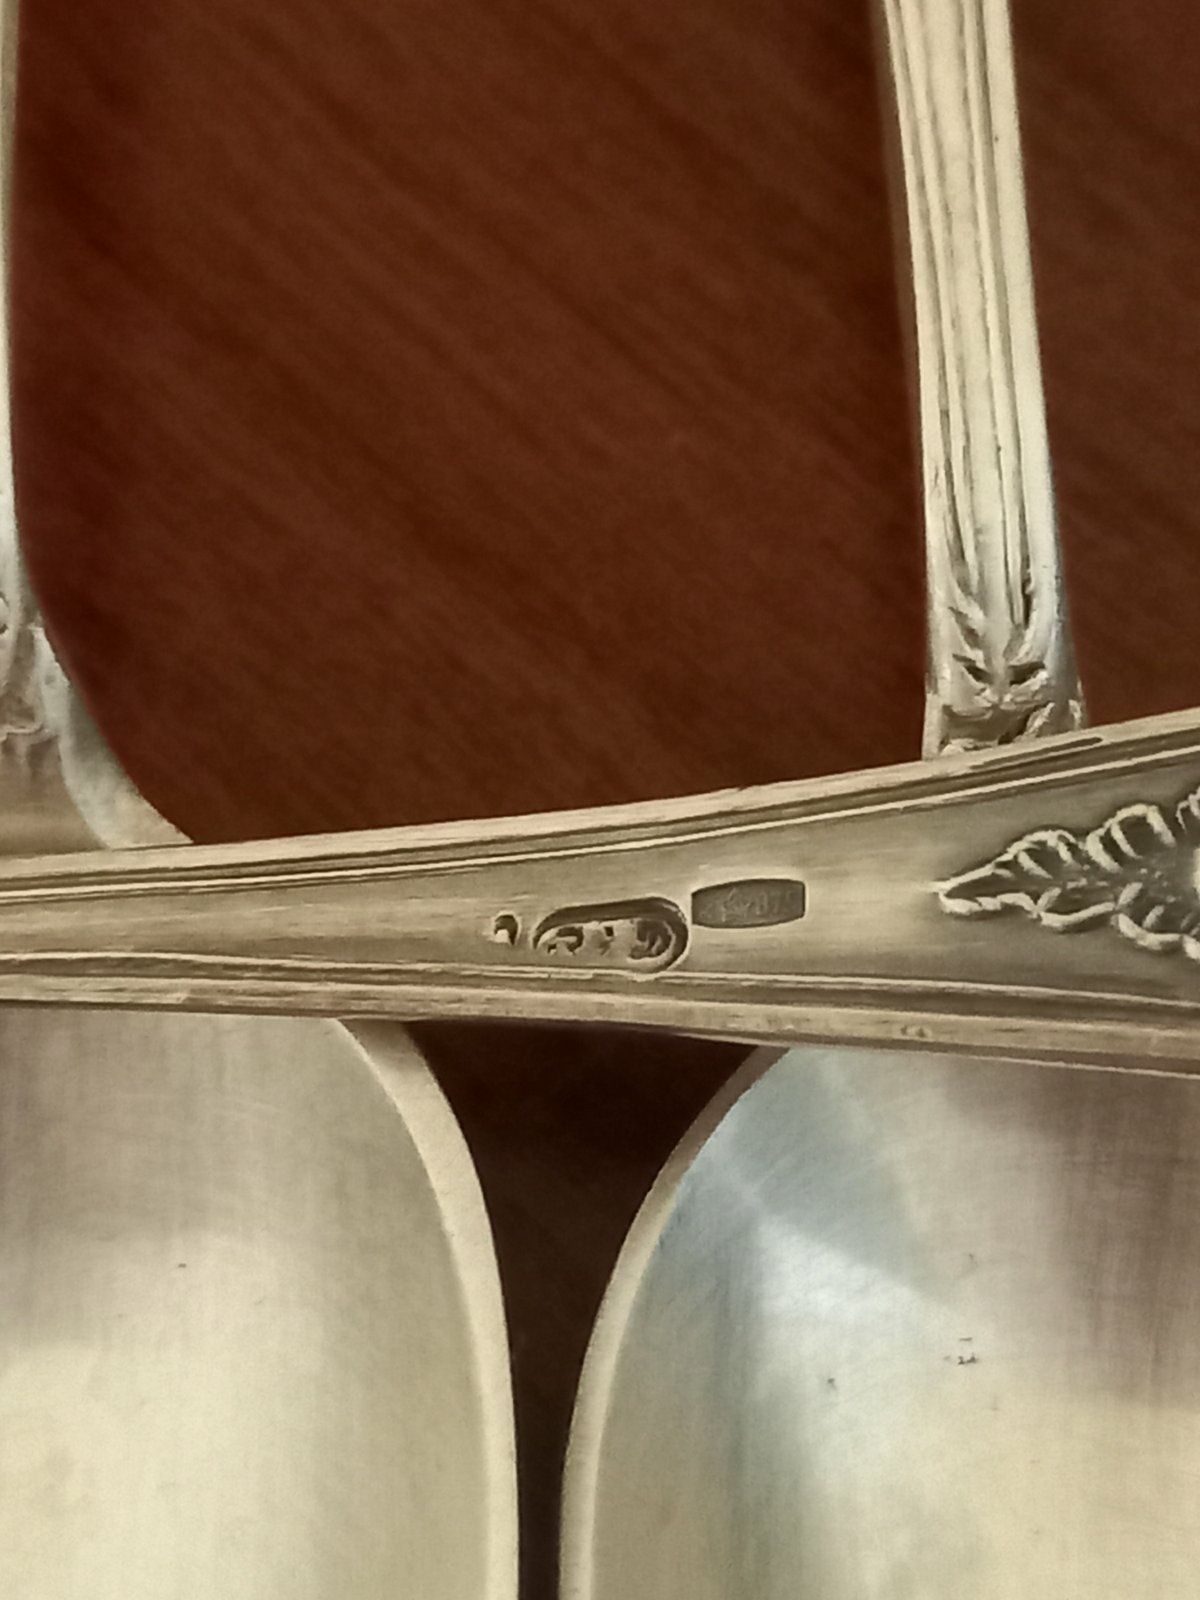 Серебряные чайные кофейные ложки "Фаберже", 125грам серебра 875пр,6 шт